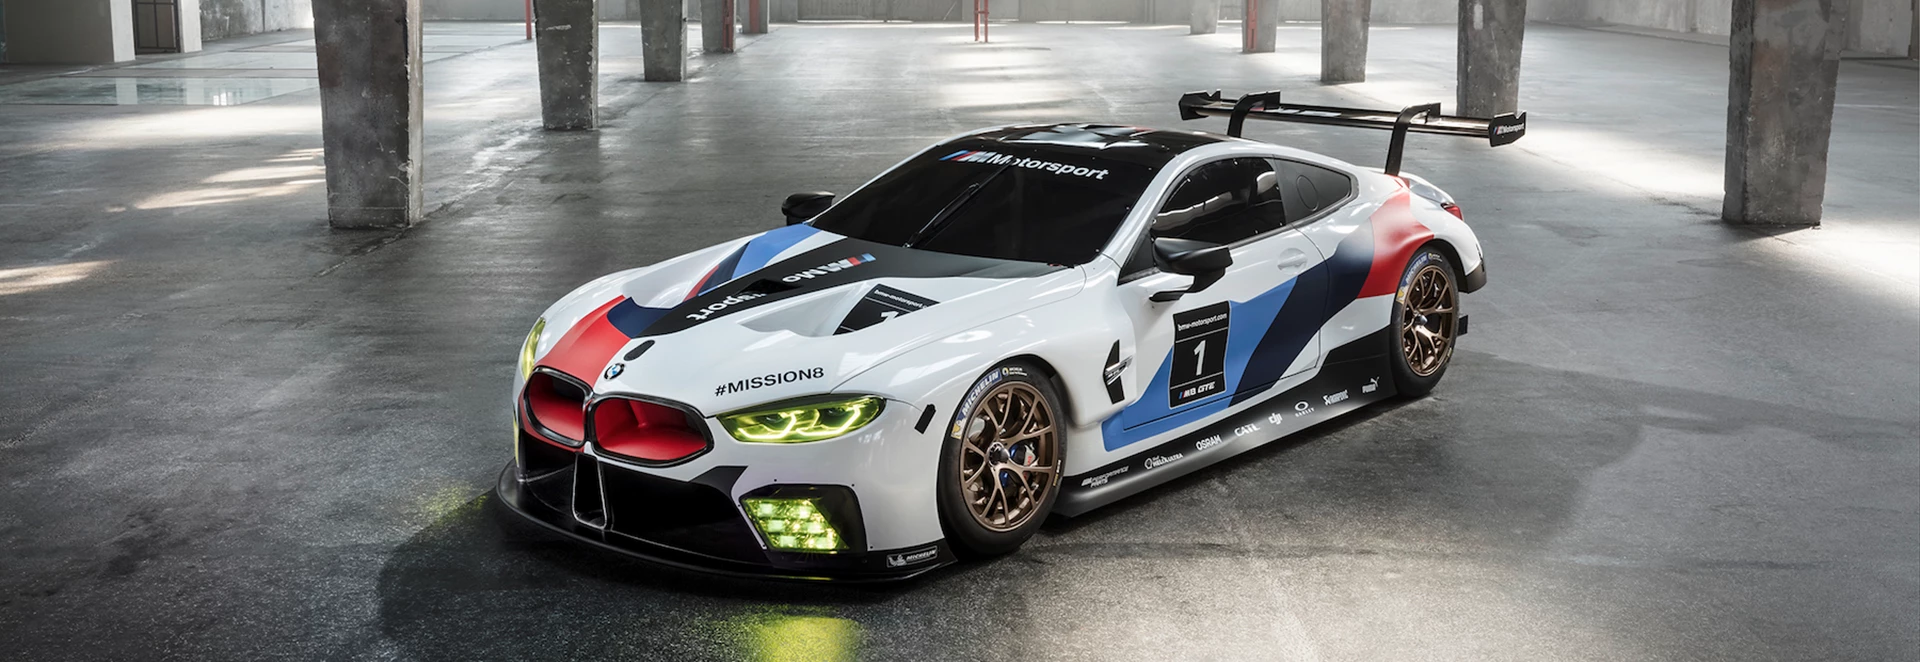 BMW unveils bonkers M8 GTE racer 